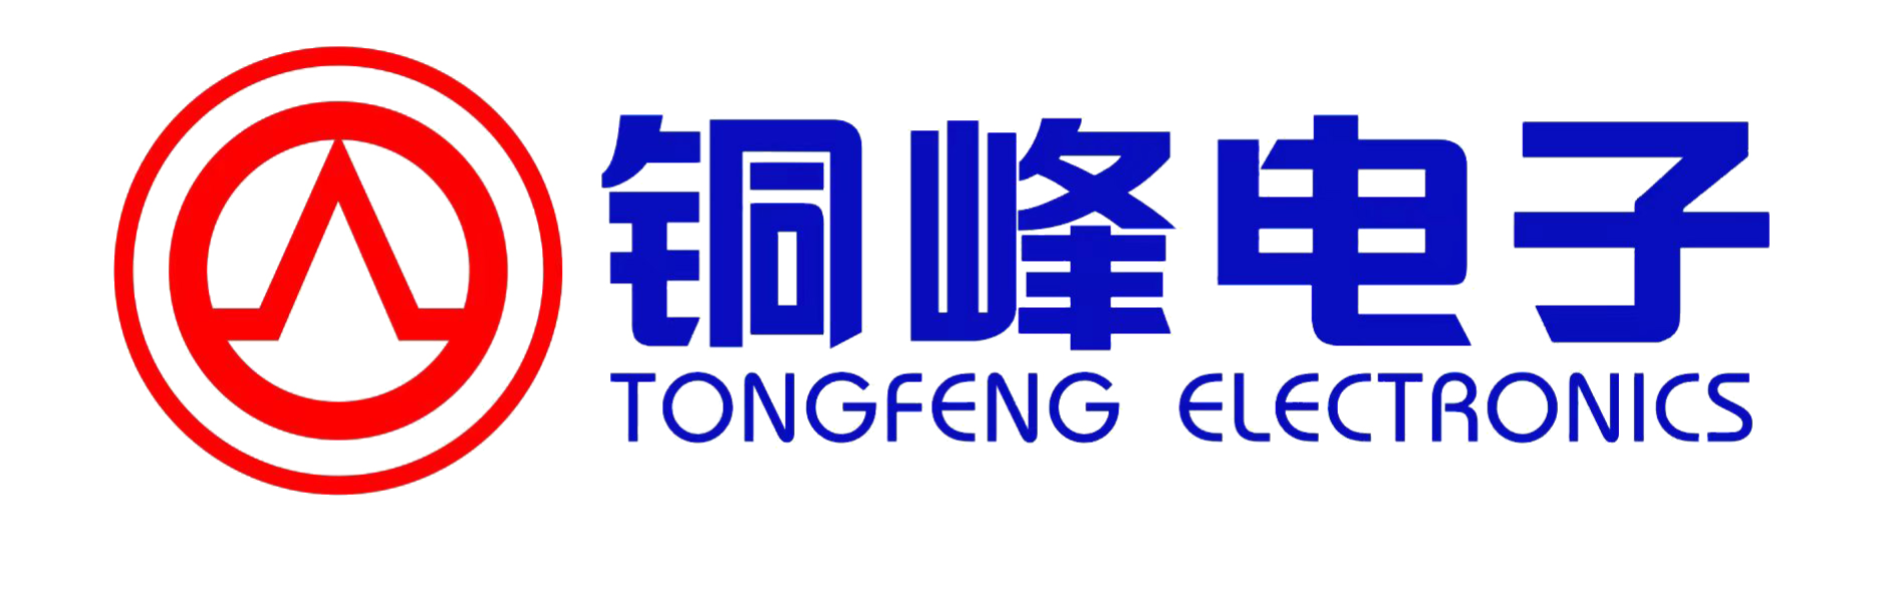 TONGFENG ELECTRONICS CO., LTD.